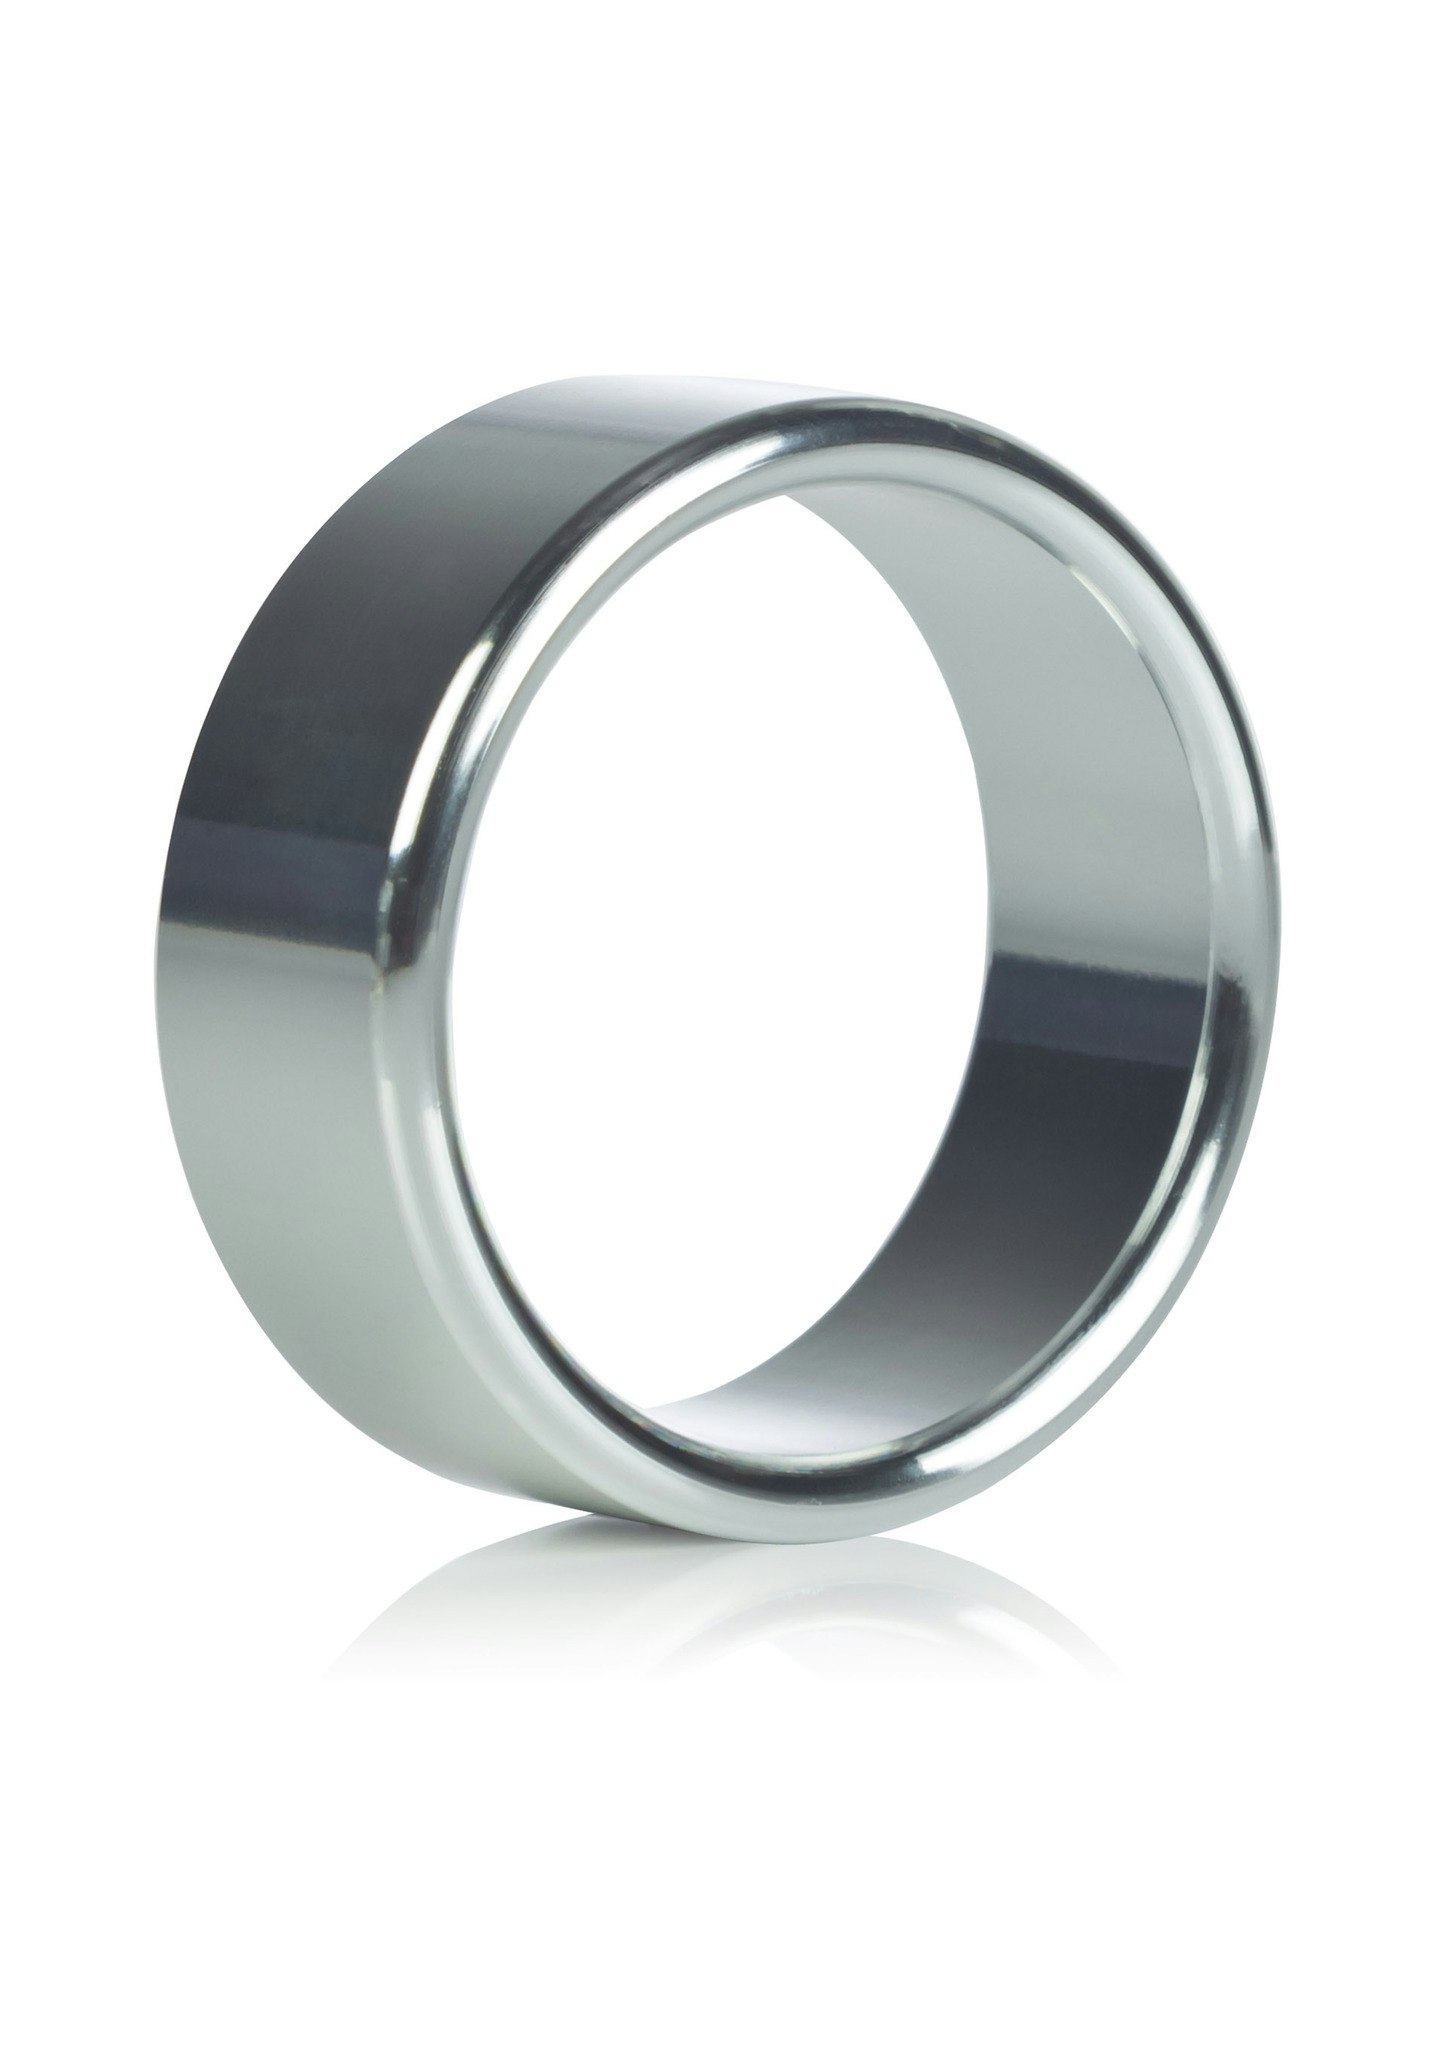 Alloy Metallic Ring, Large